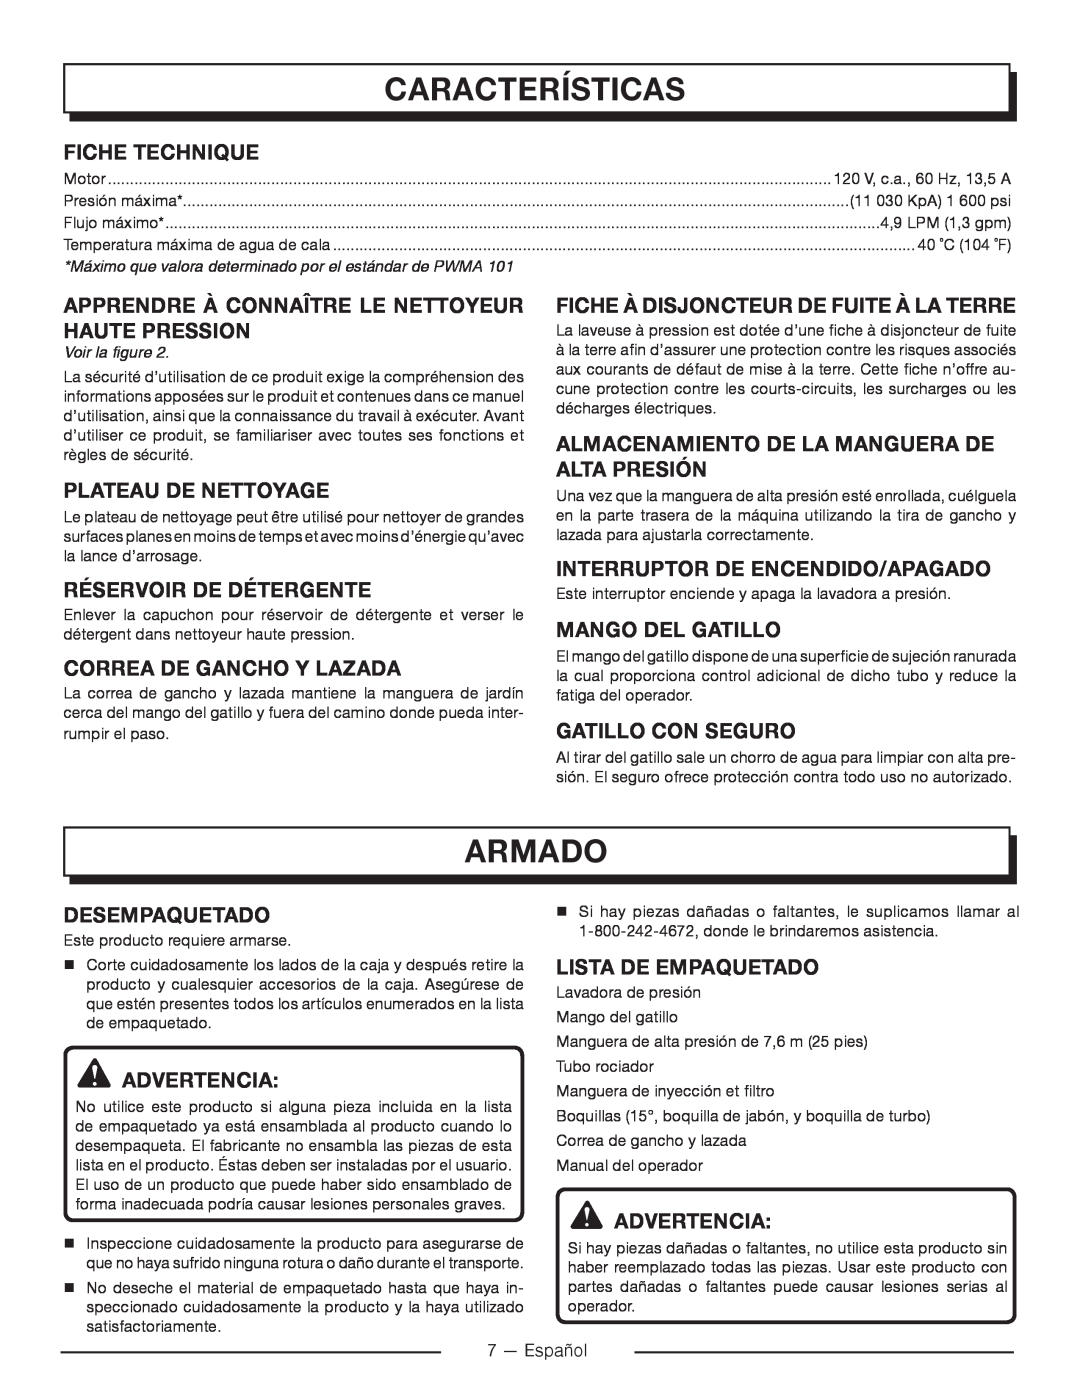 Homelite UT80715 Características, Armado, Correa De Gancho Y Lazada, Almacenamiento De La Manguera De Alta Presión 